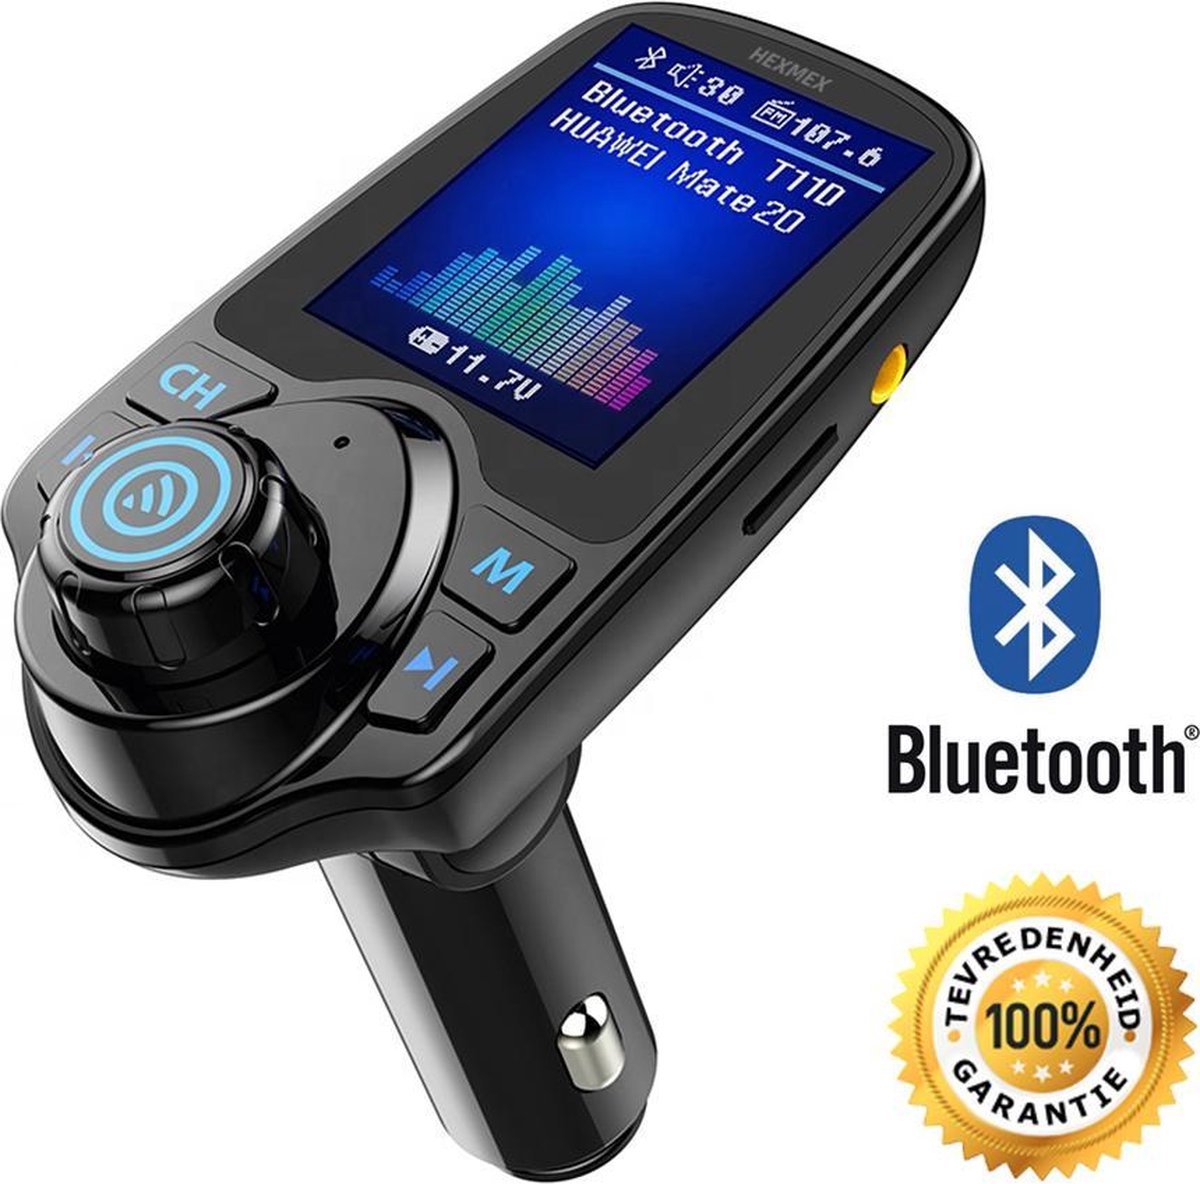 Carkit FM Transmitter met Bluetooth T11D / Draadloze Carkit / MP3 speler mobiel / Handsfree bellen in de auto / AUX input / Lader / USB Flash drive / Bellen / Muziek / Bluetooth / SD kaart / Carkit Adapter